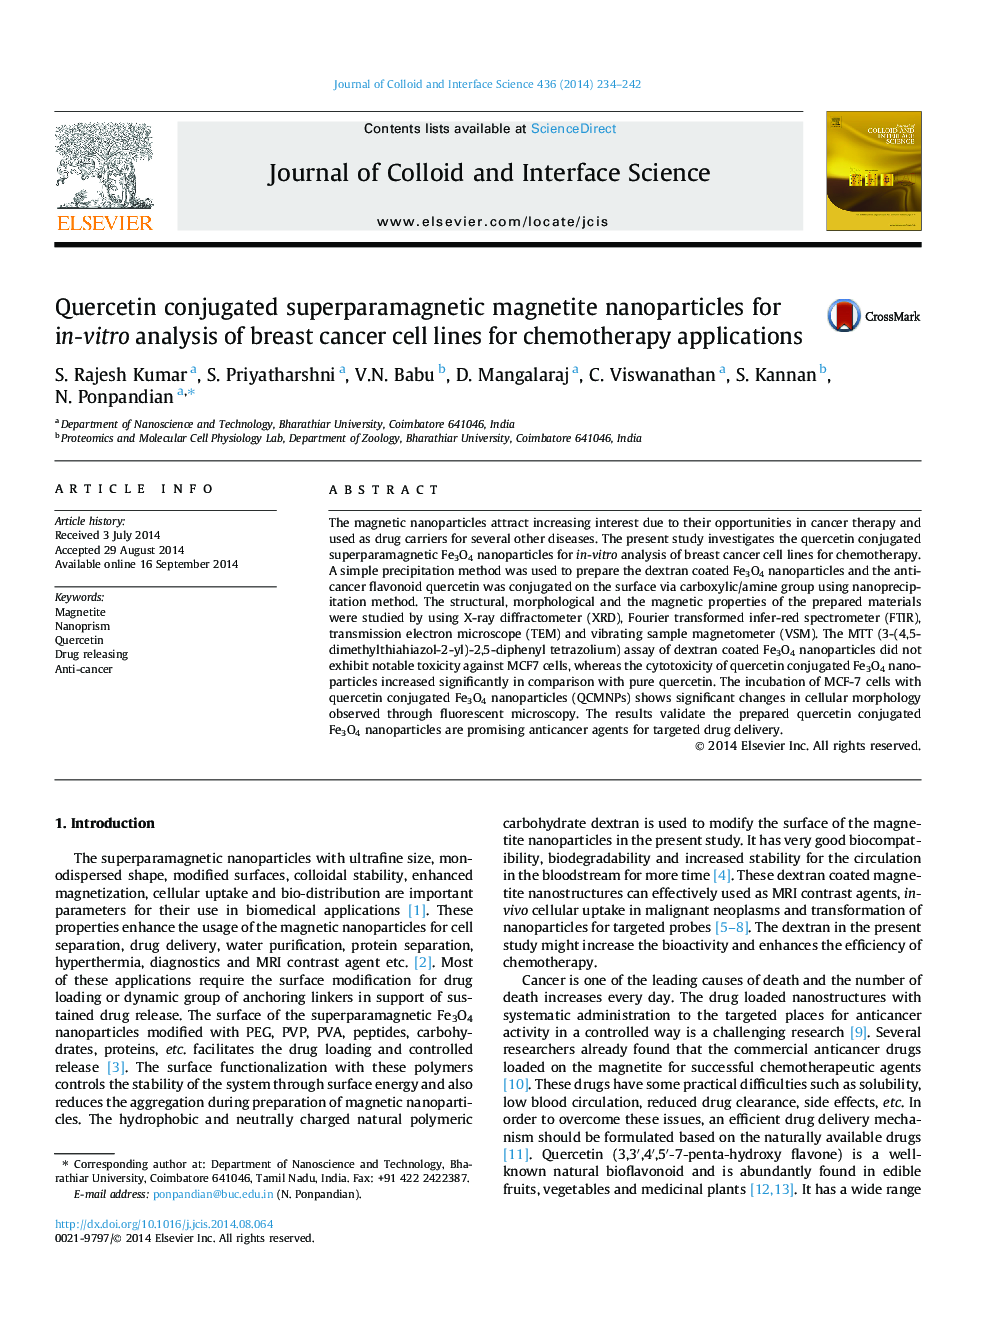 نانوذرات مغناطیسی سوپر پارامغناطیسی کوئرستین برای تجزیه و تحلیل درون سلول های سرطانی سرطان برای برنامه های شیمی درمانی 